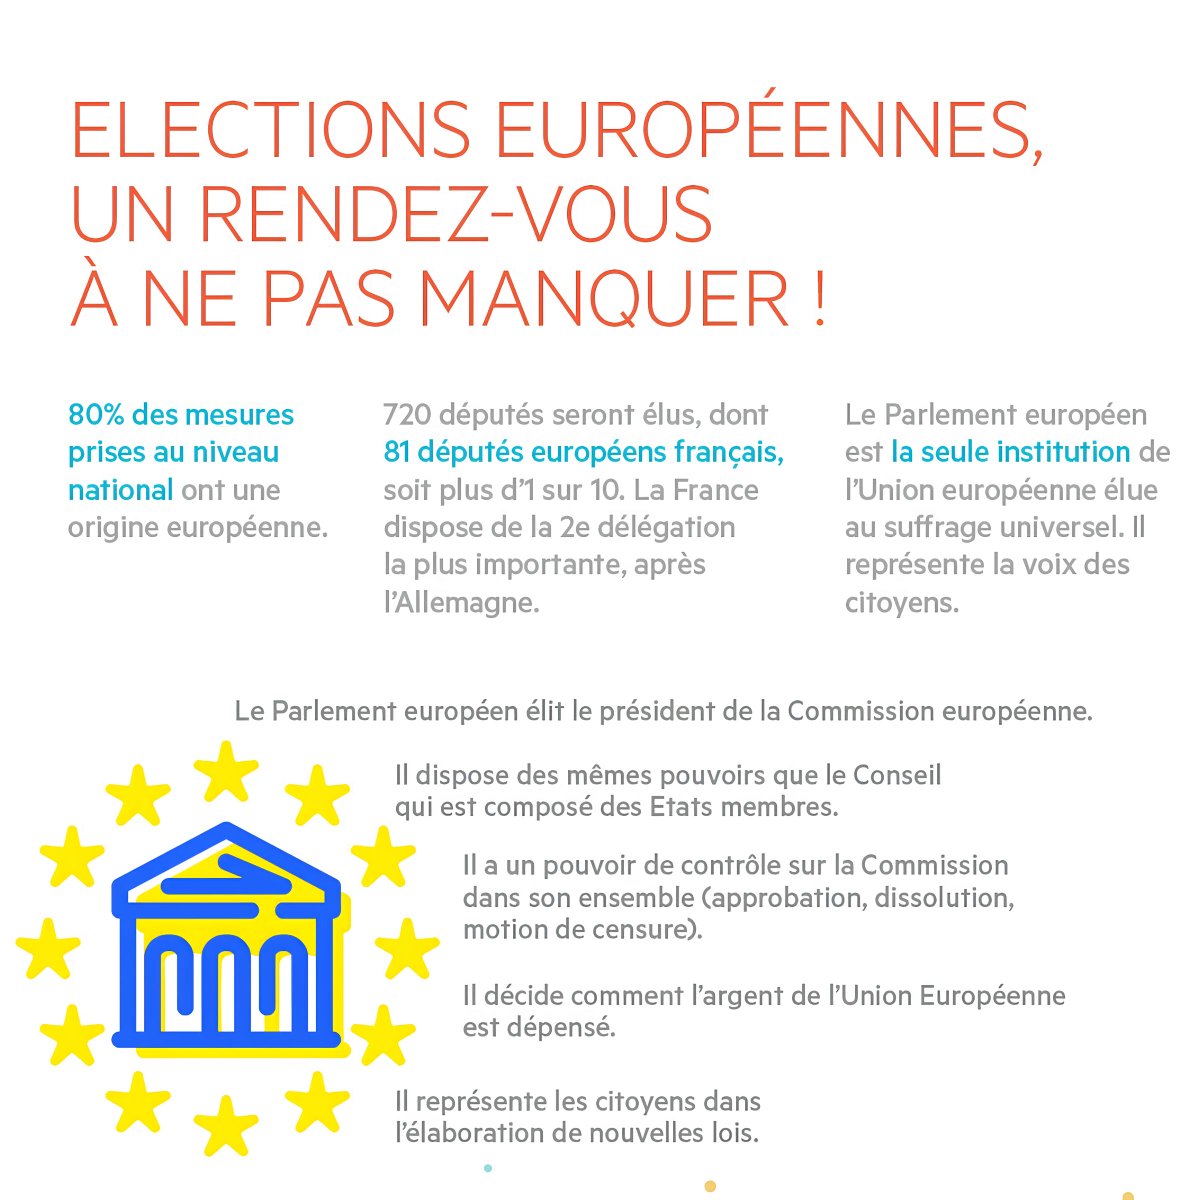 Voter, c’est le premier pas en vue d'obtenir un environnement favorable au développement des entreprises de proximité ! Artisans, commerçants, professionnels libéraux, votons le 9 juin pour élire au Parlement européen des députés français qui connaissent nos priorités.